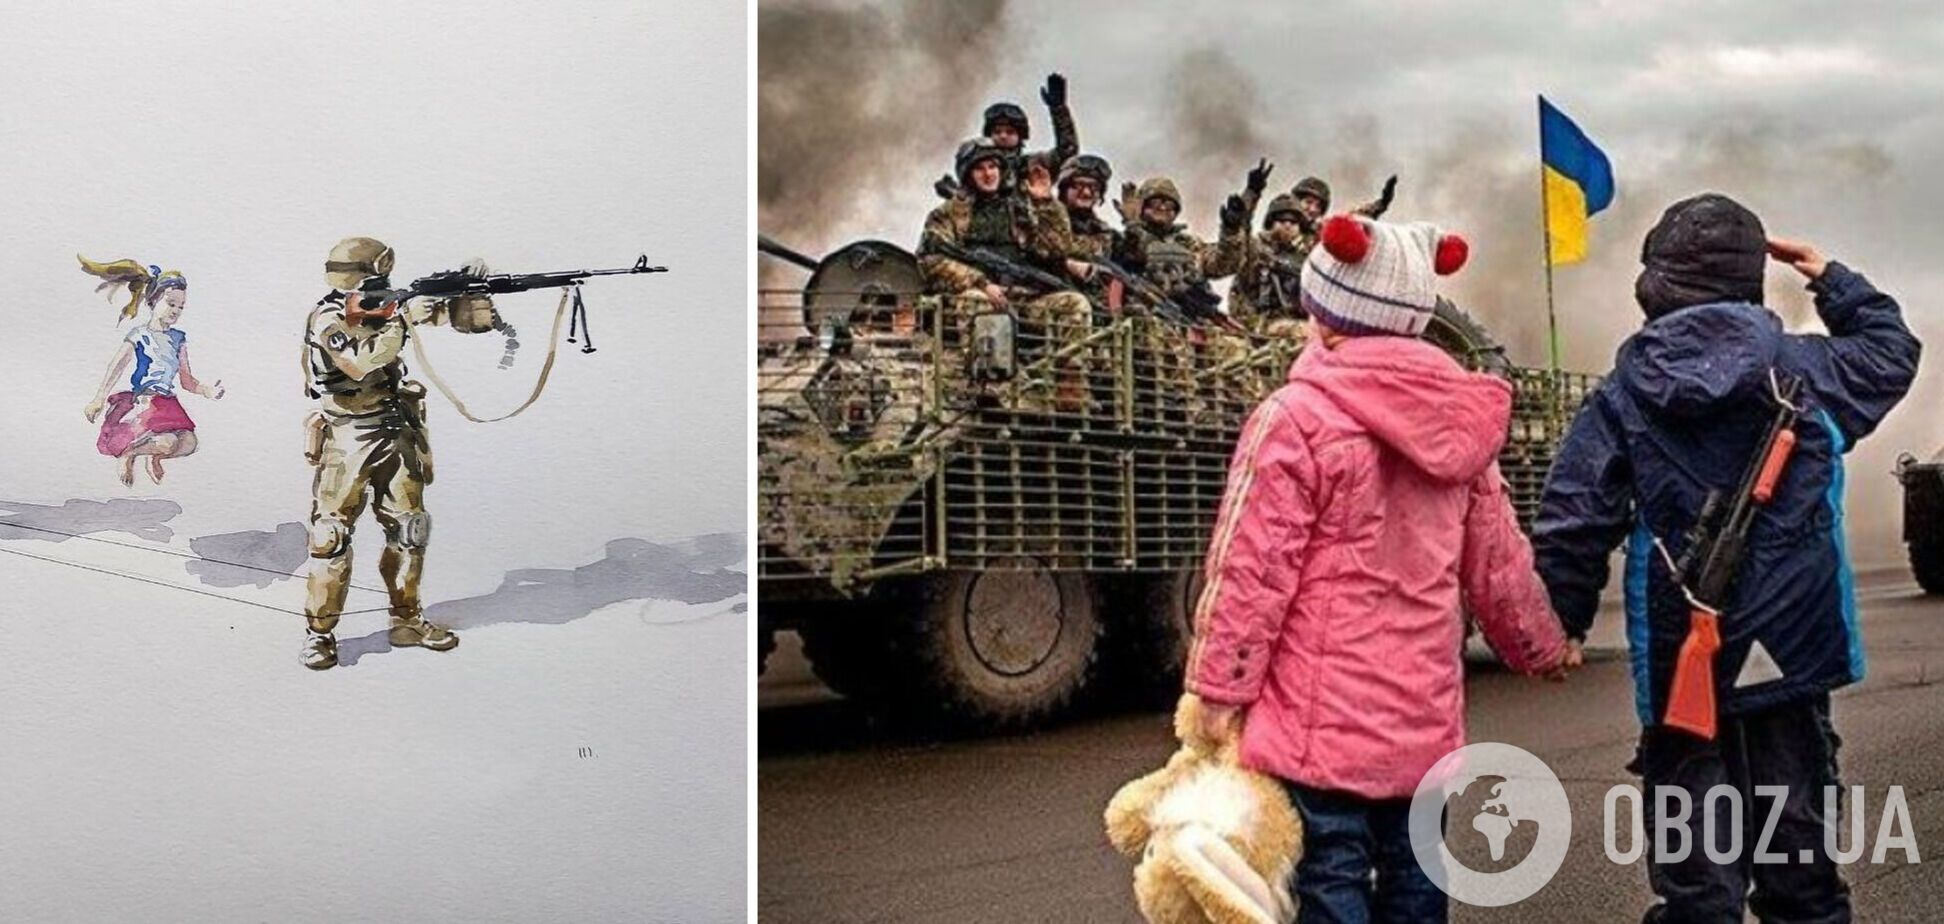 'В полной безопасности'. Картину о жизни детей Украины во время войны назвали шедевром